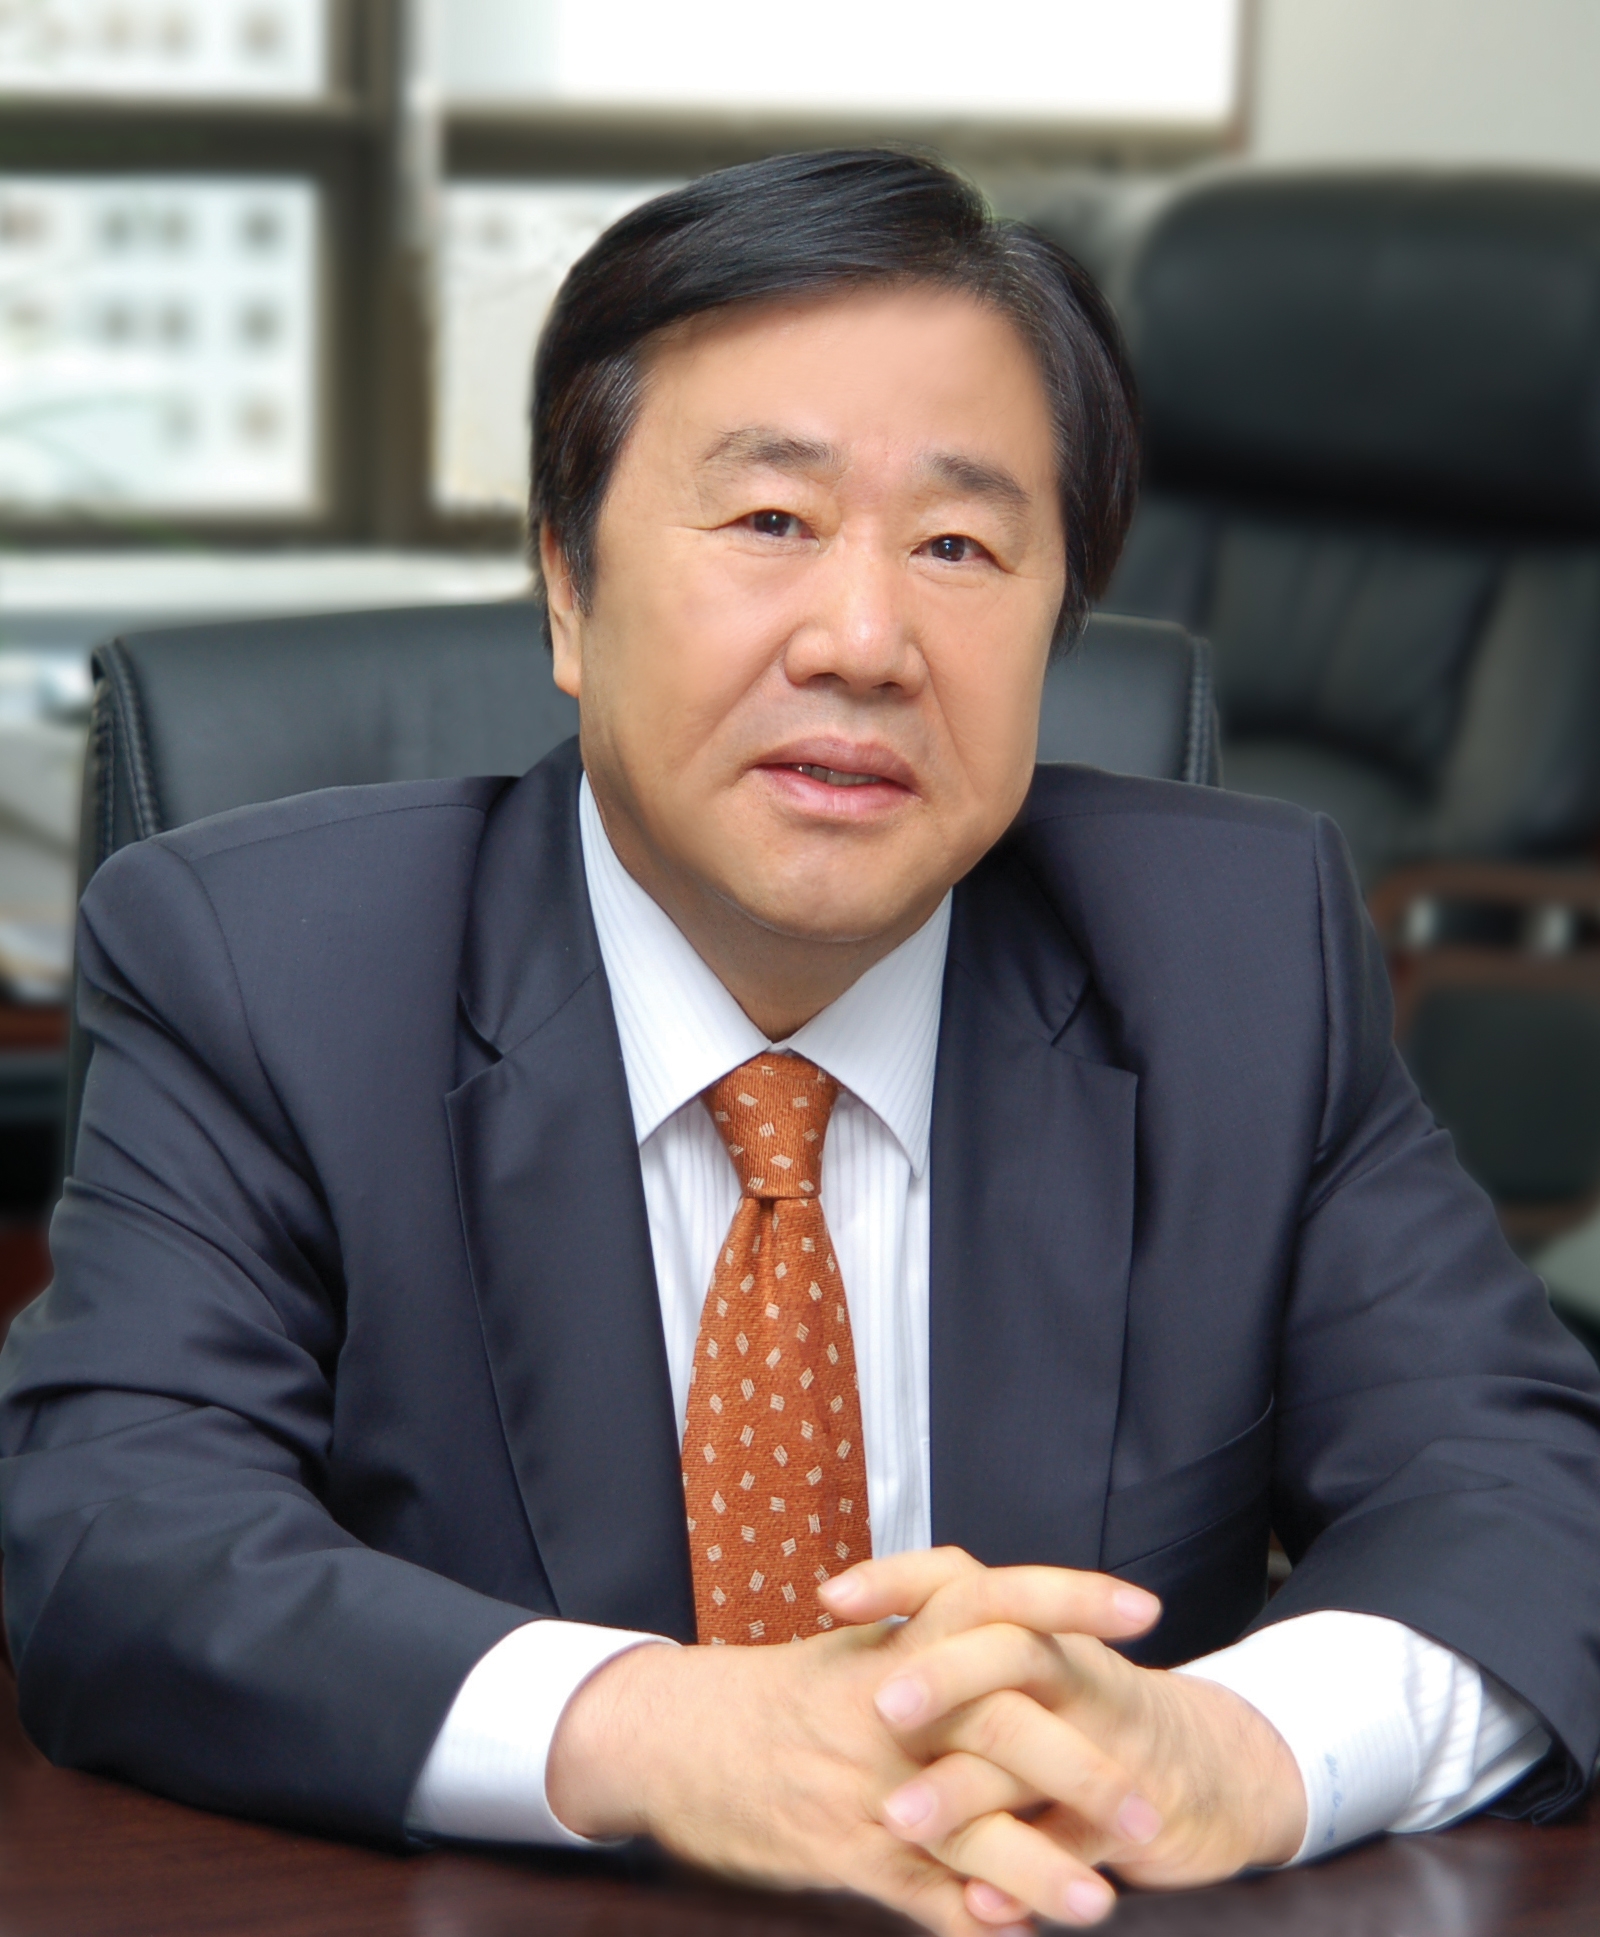 우오현 SM그룹 회장 “위기에 당당히 맞서는 성장동력 마련”